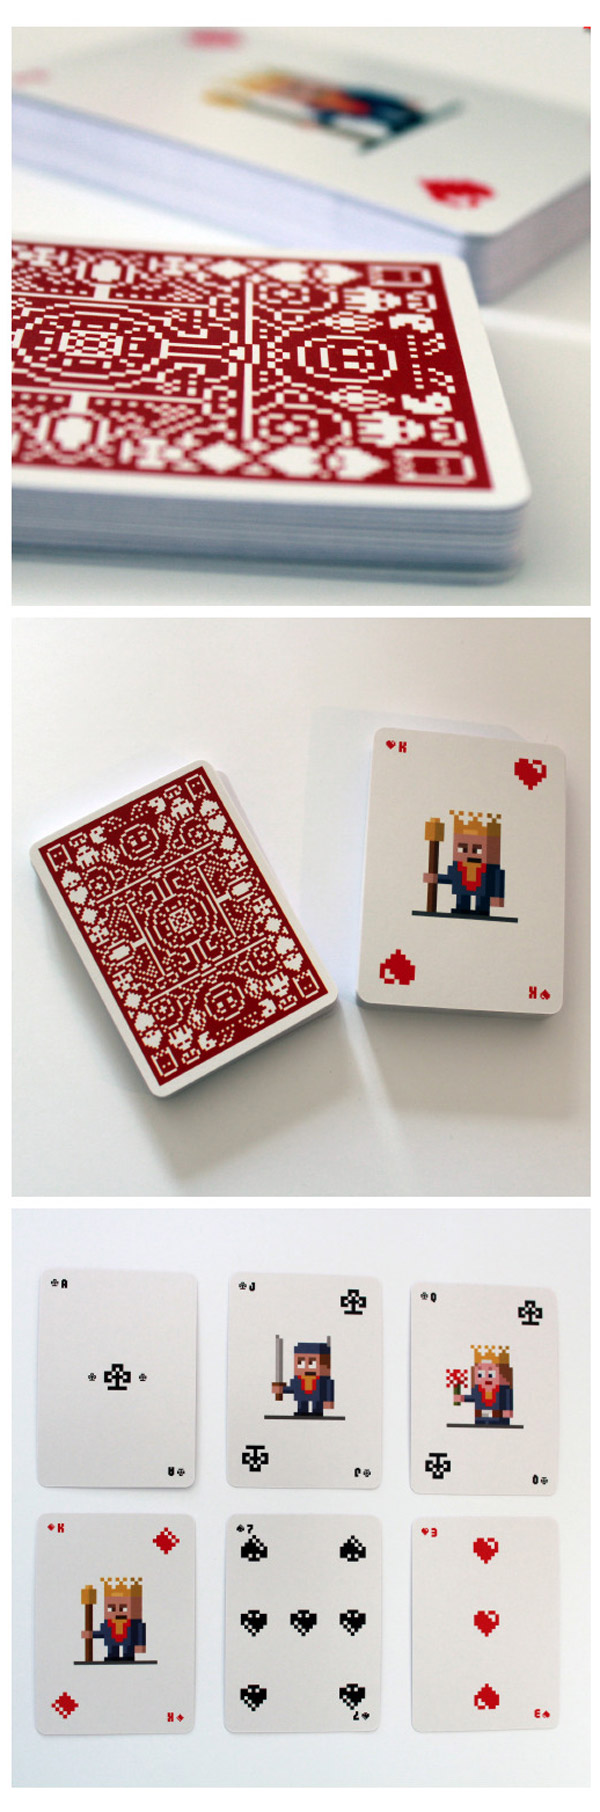 Juego de cartas pixeladas